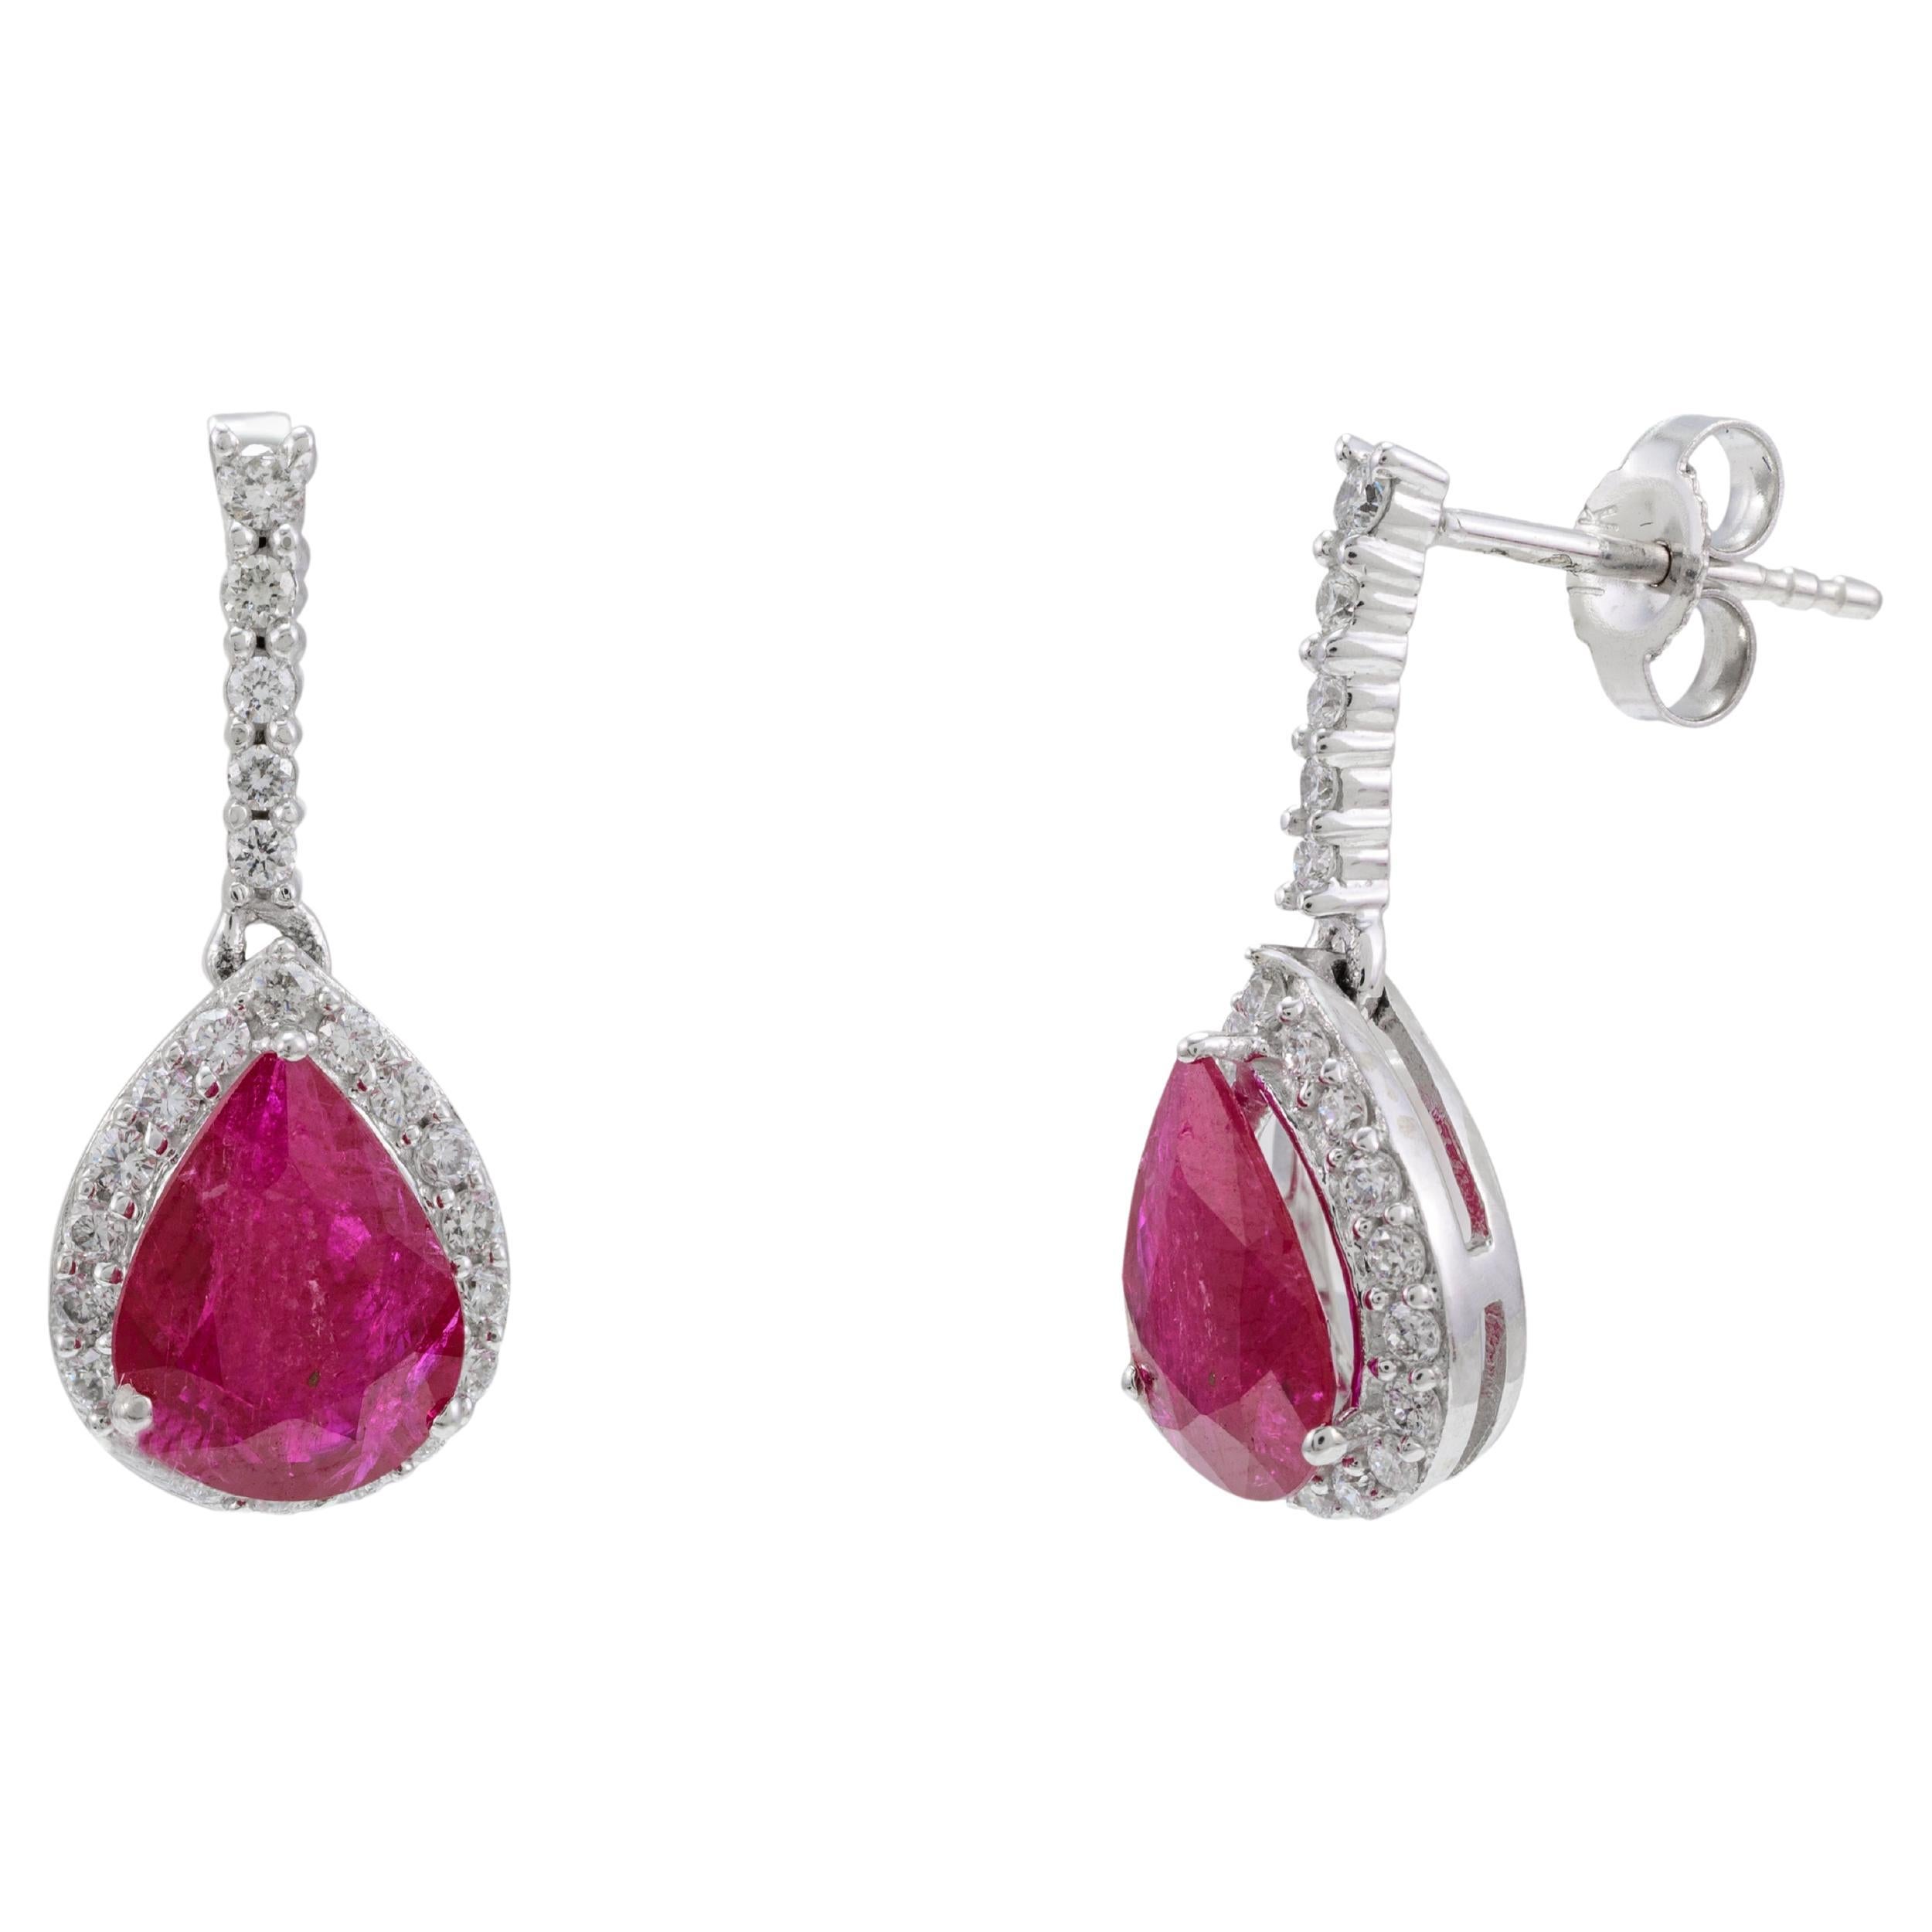 Designer Diamond Ruby Dangle Earrings for Mom in 14k Solid White Gold